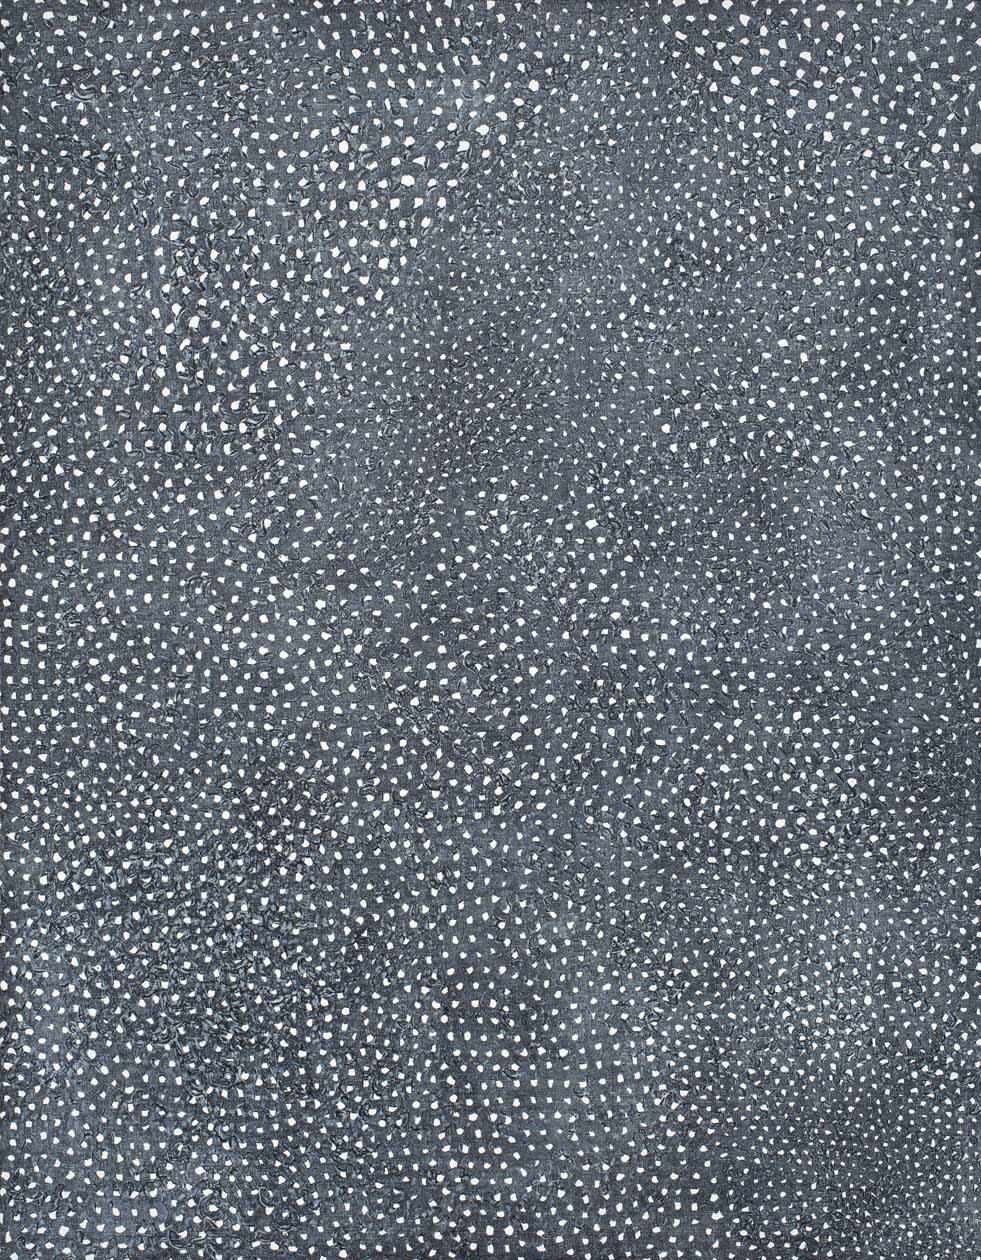 Yayoi Kusama, Original Infinity Nets, 2000, Acrilico su tela, cm 117 x 91, Collezione Pippo e Carla Traversi. Foto: Antonio Maniscalco.